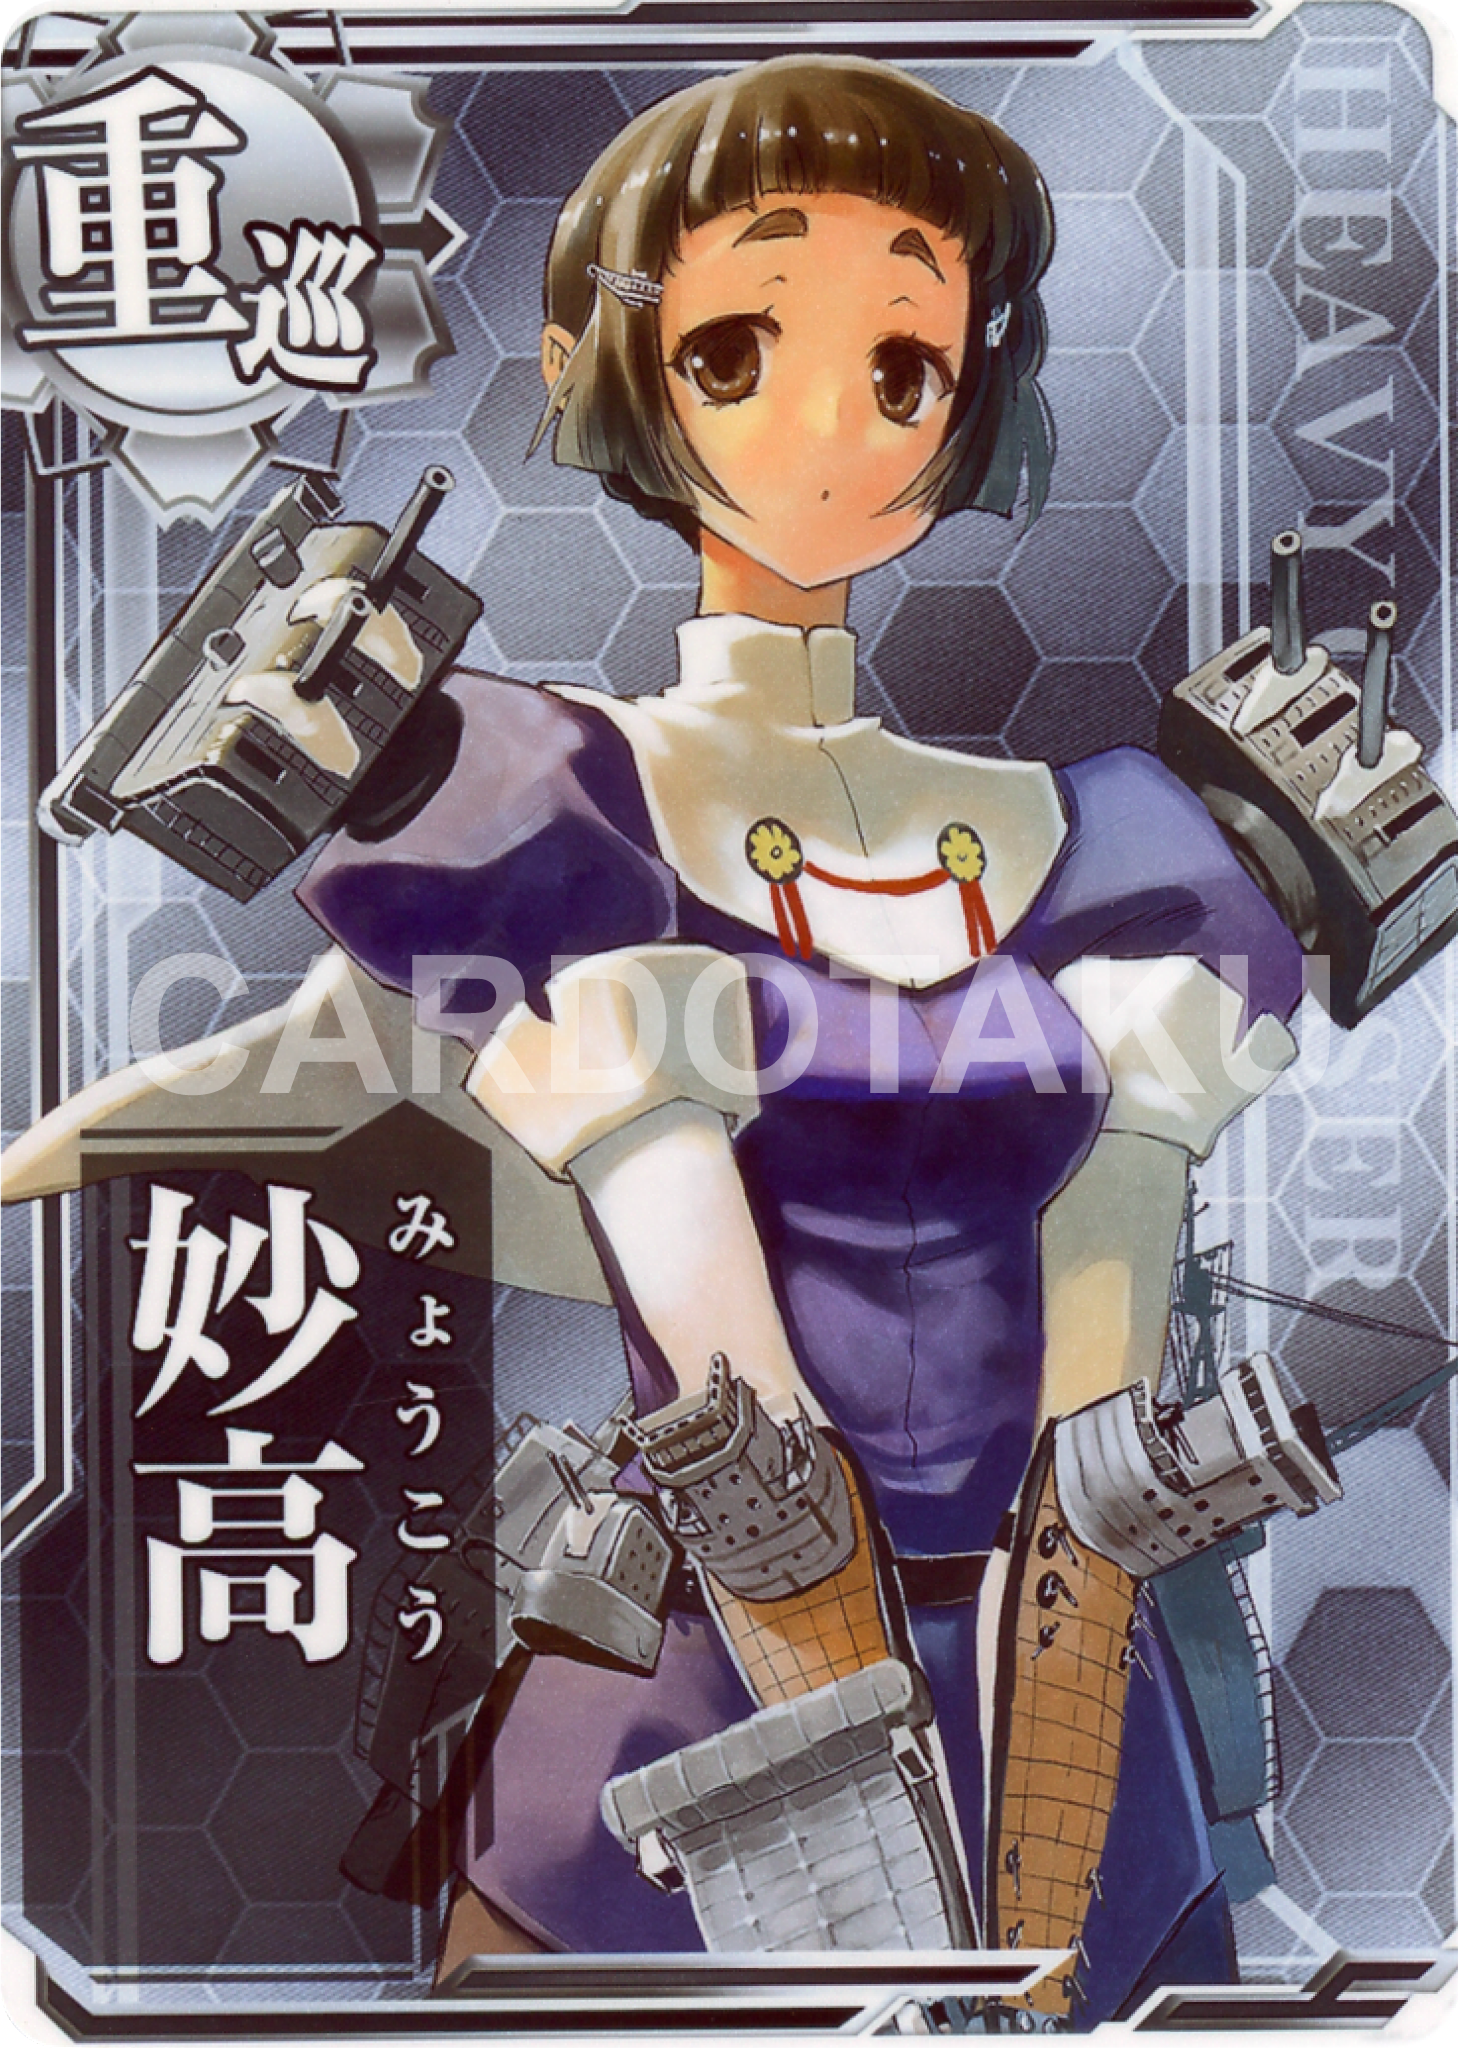 KanColle Arcade [Common] No.055 Myoukou Arcade game card